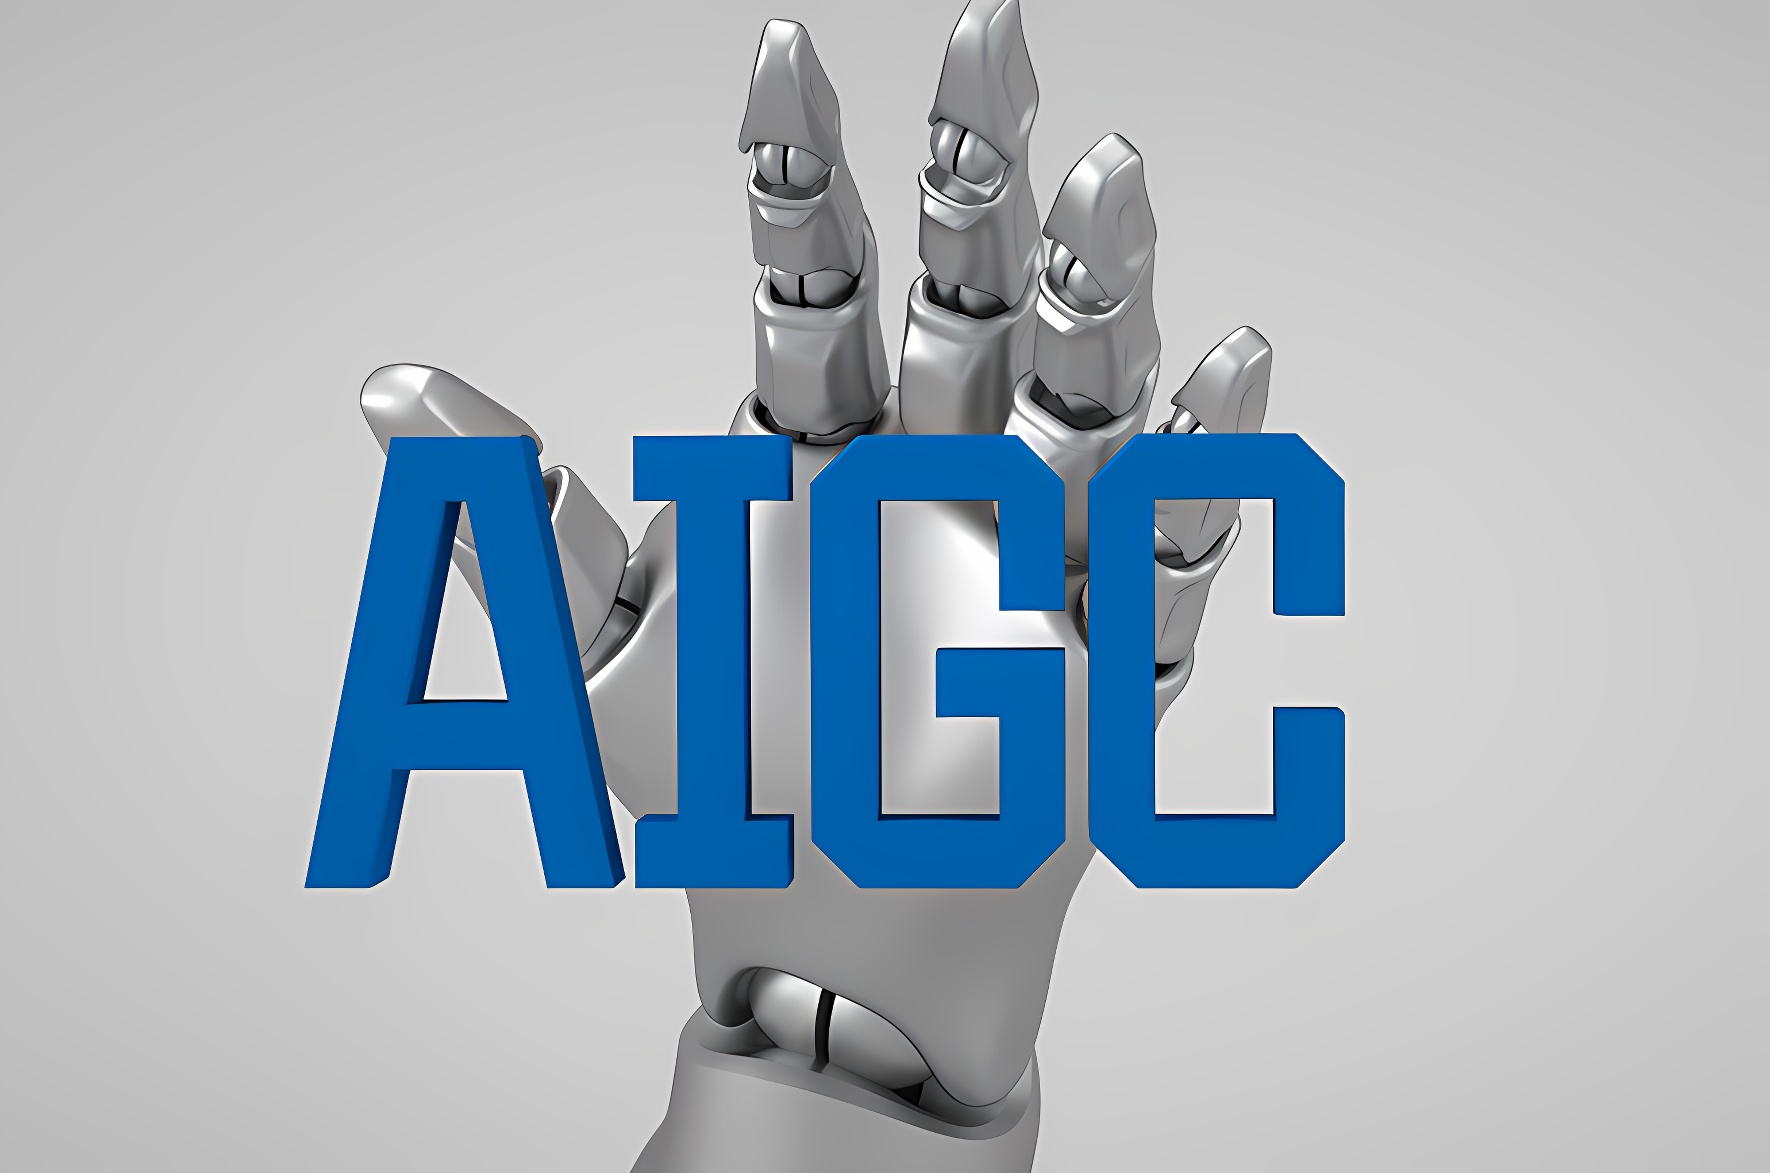 图片展示了一个金属质感的机器人手指，触碰着蓝色的“AI”字样，背景为灰色，给人科技感和未来感。